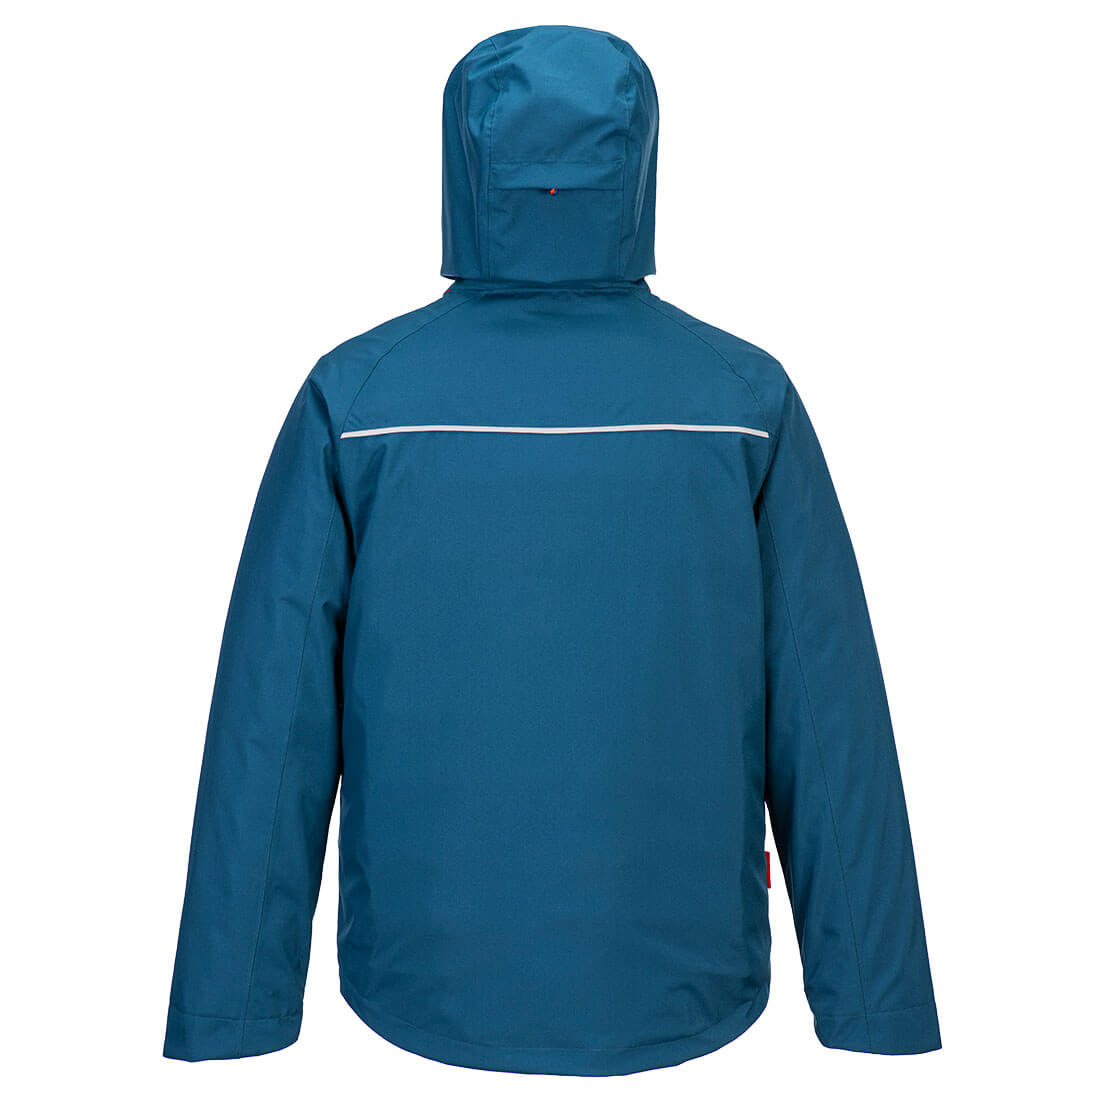 DX4 3-in-1 Jacket - Safetywear